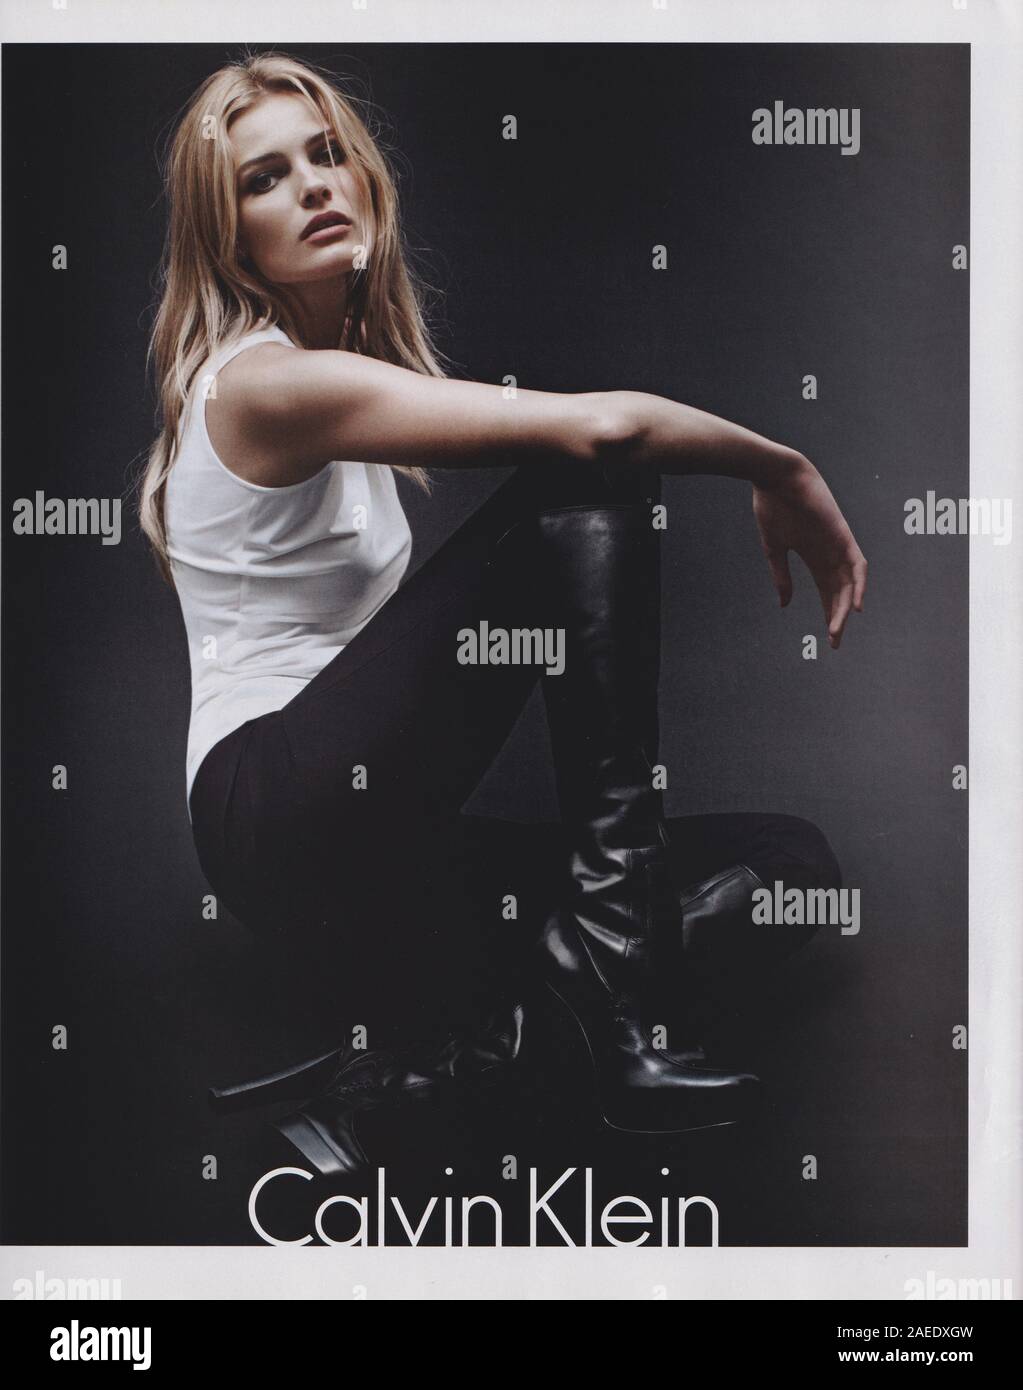 Plakat Werbung Calvin Klein Mode Haus Mit Edita Vilkeviciute Papier Magazin Aus 12 Ck Werbung Kreative Calvin Klein 10s Anzeige Stockfotografie Alamy